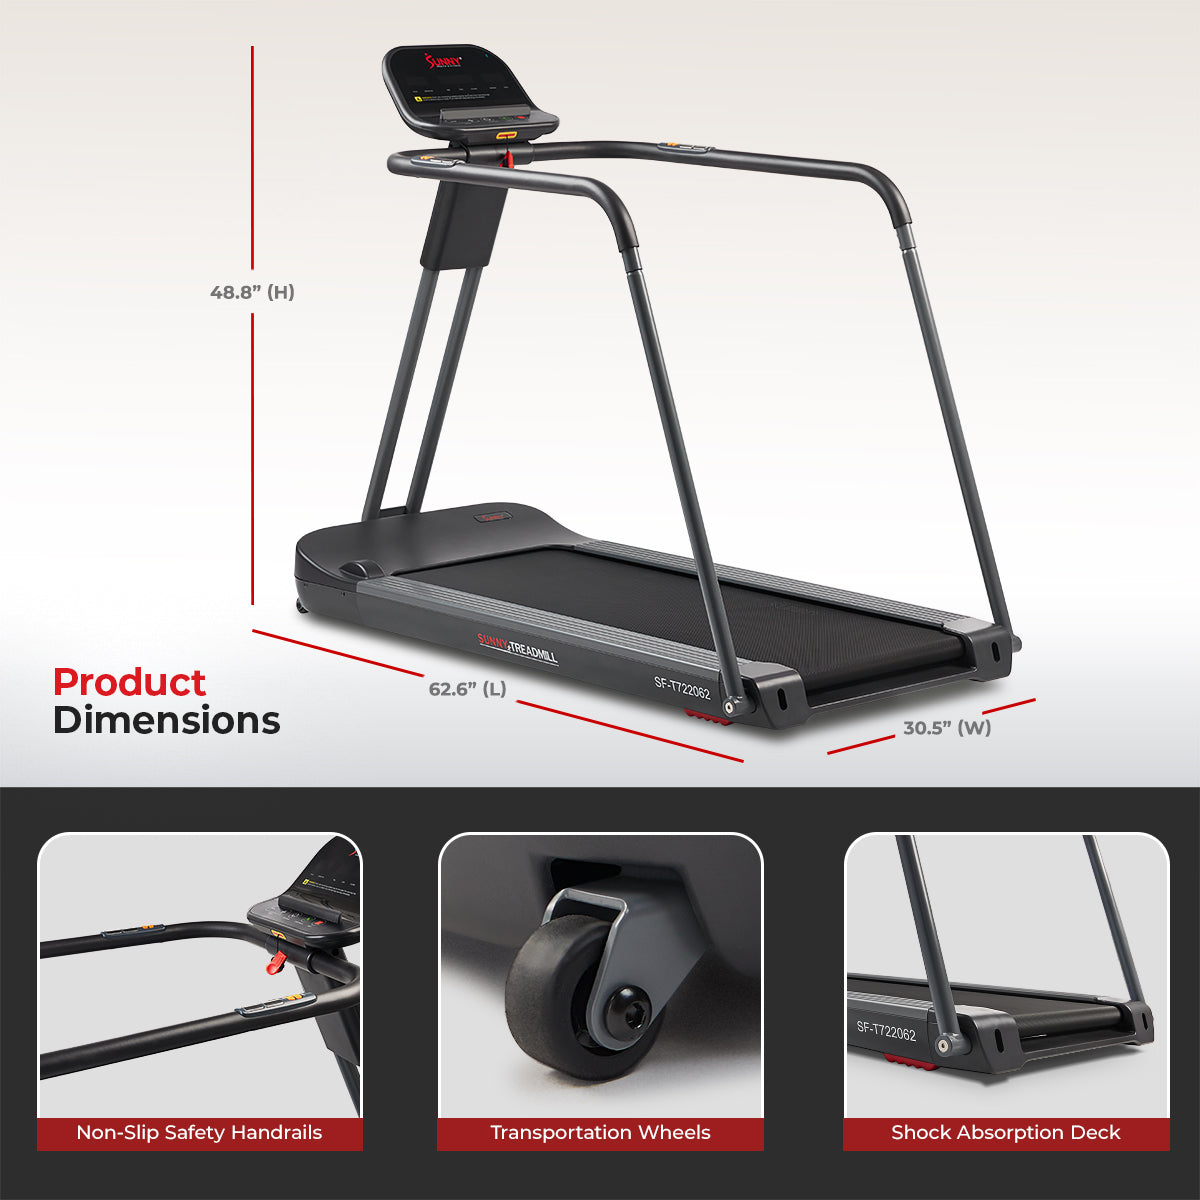 Non-slip WalkingPad Fitness Equipment Treadmill Floor Mat